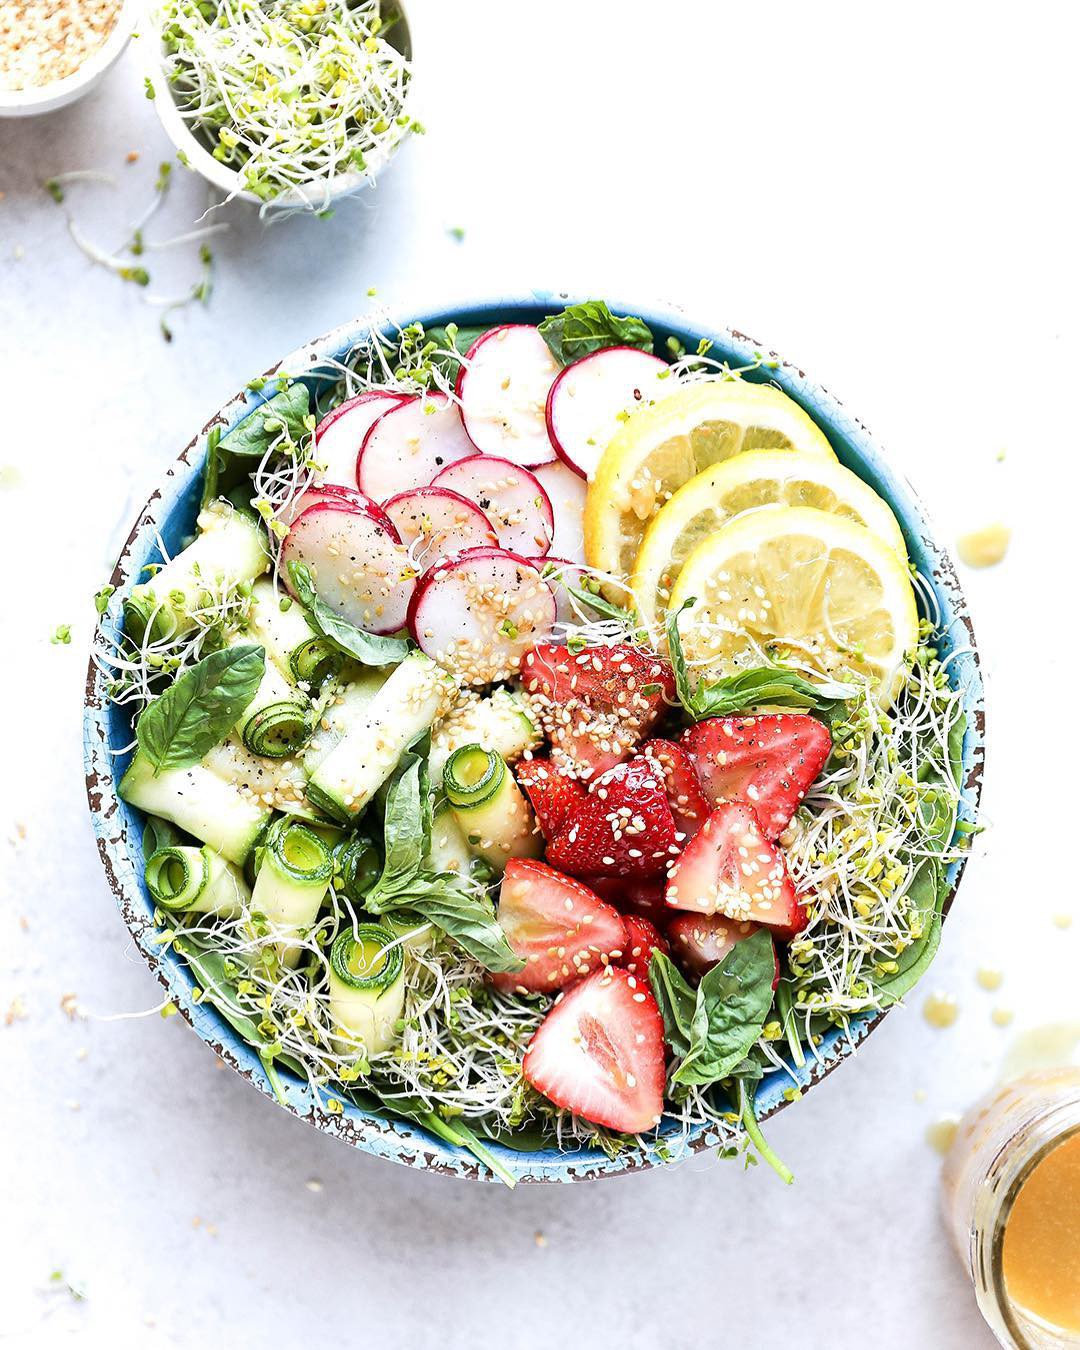 Nàng Tiến sĩ từ bỏ sự nghiệp nghiên cứu để trở thành food blogger, say mê rau xanh và tạo ra những đĩa salad vừa đẹp lại vừa ngon - Ảnh 22.